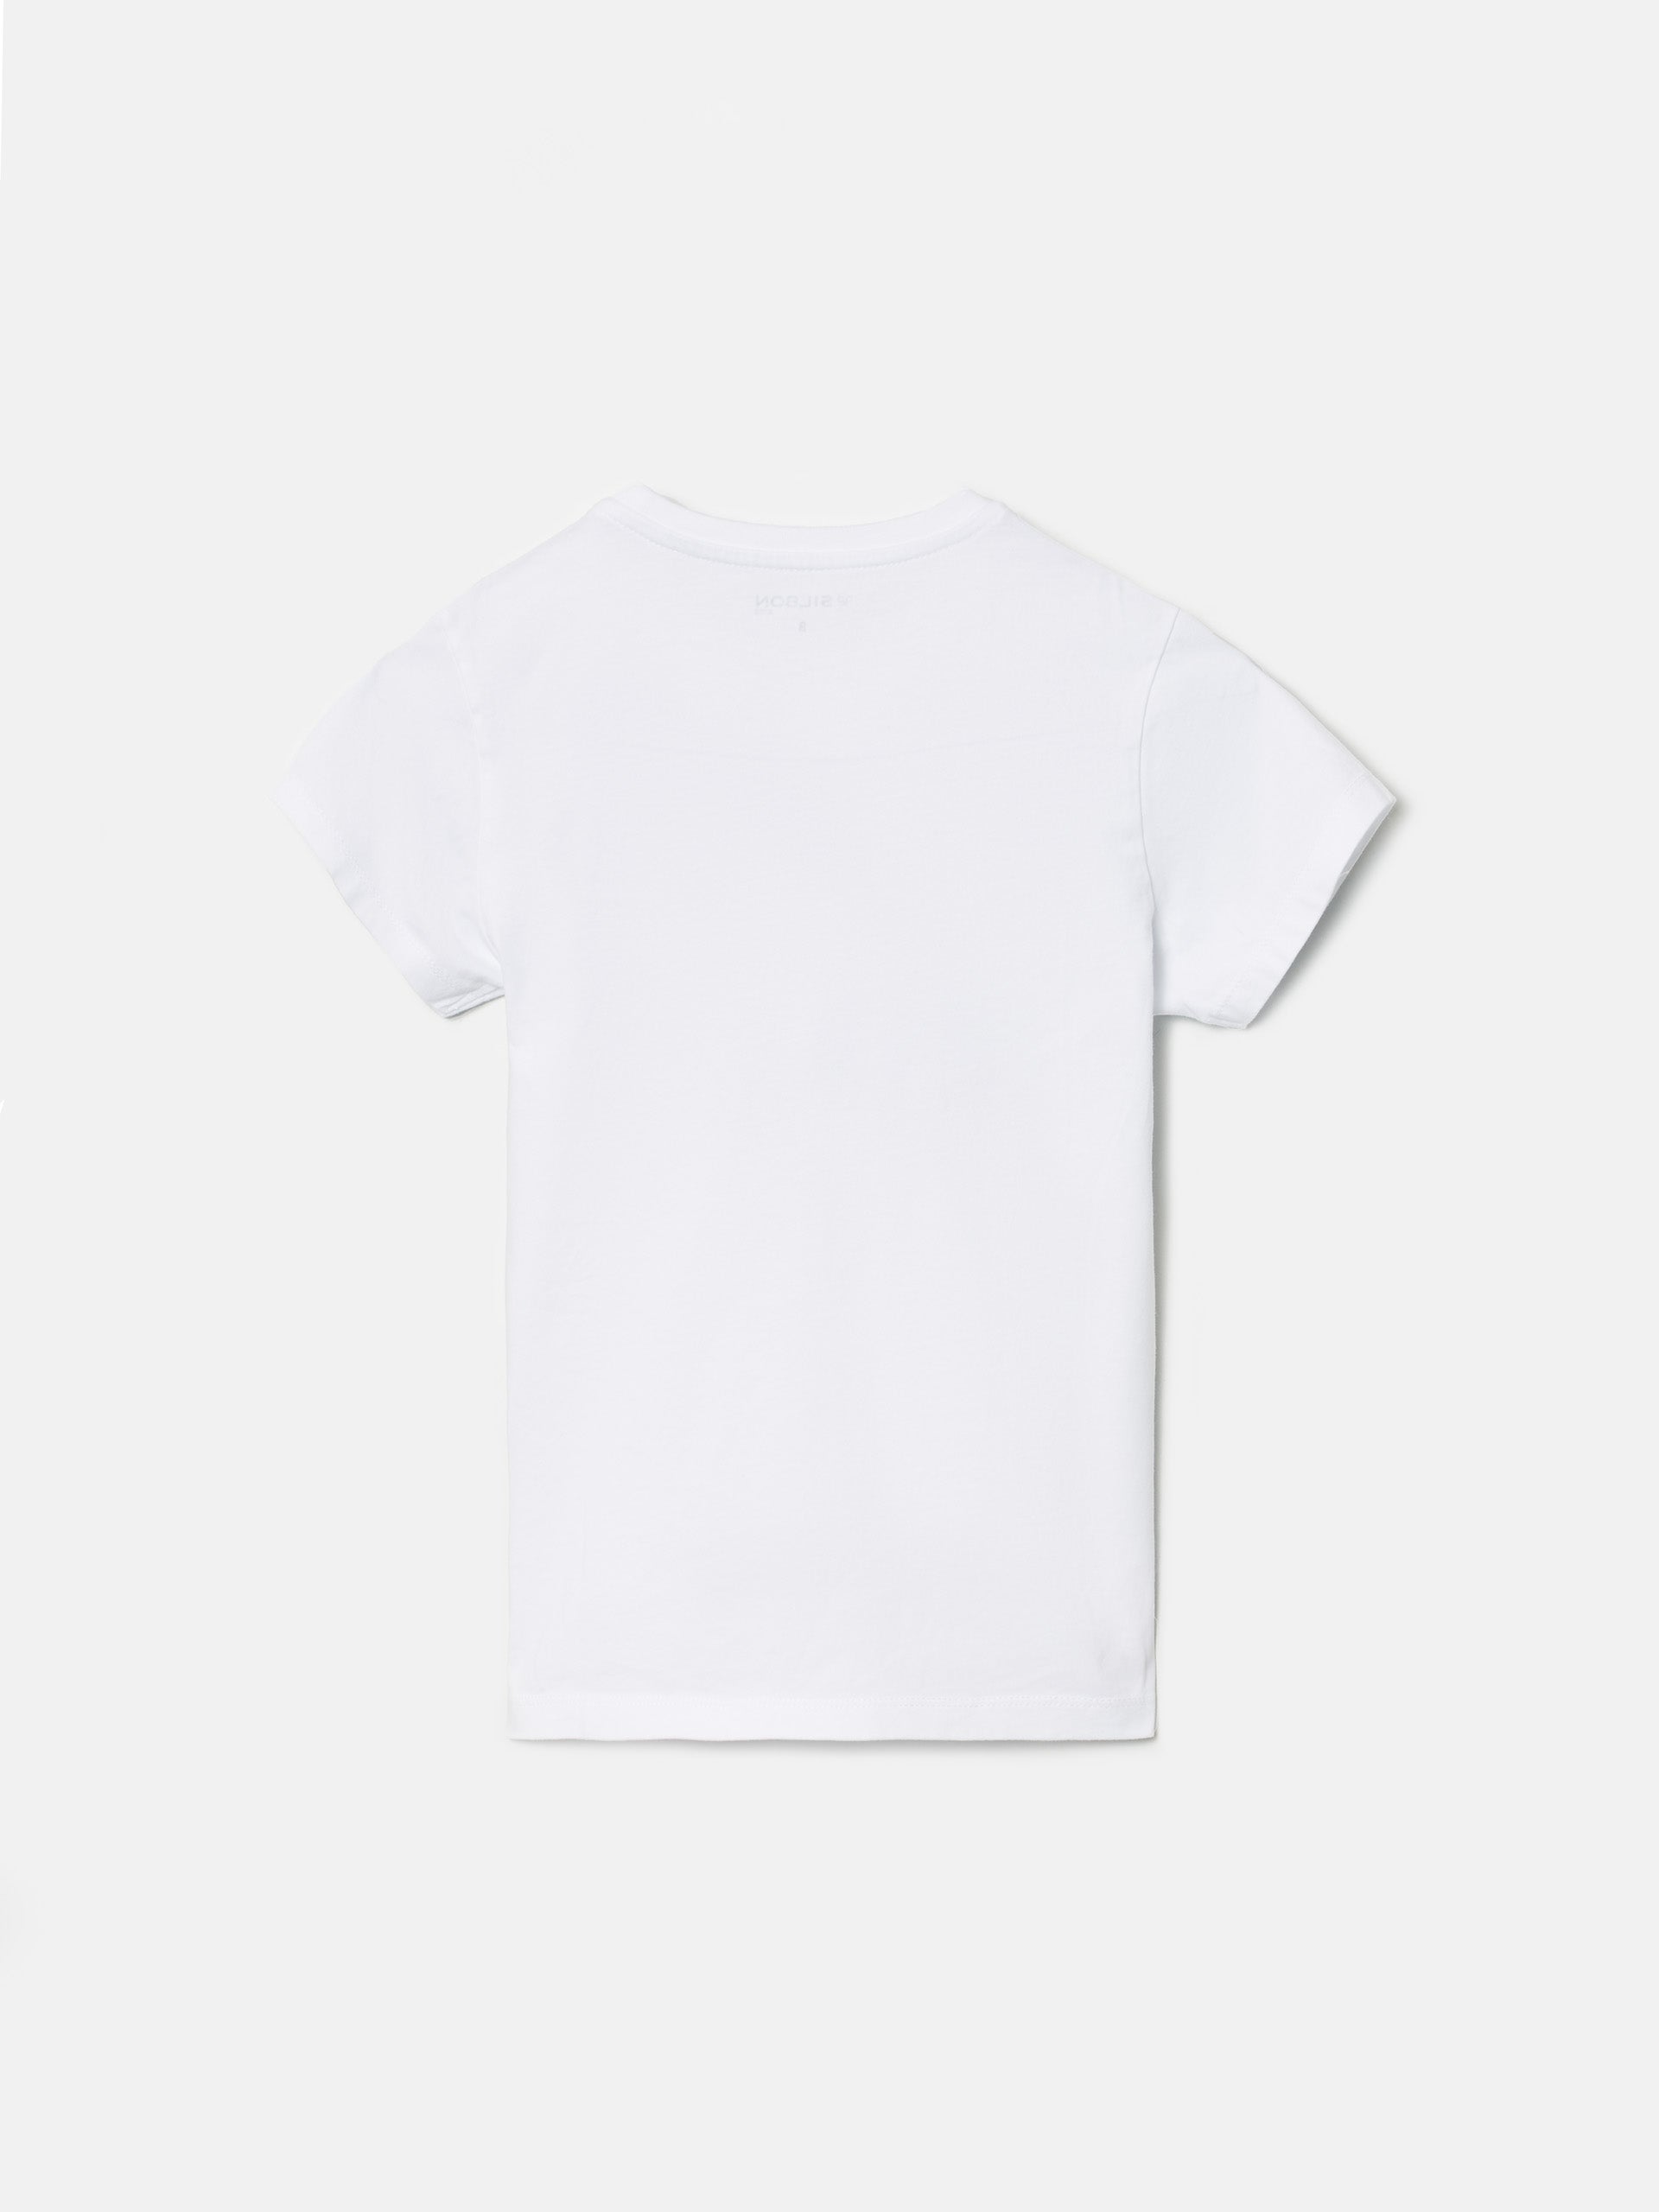 Camiseta kids logo pixel blanca